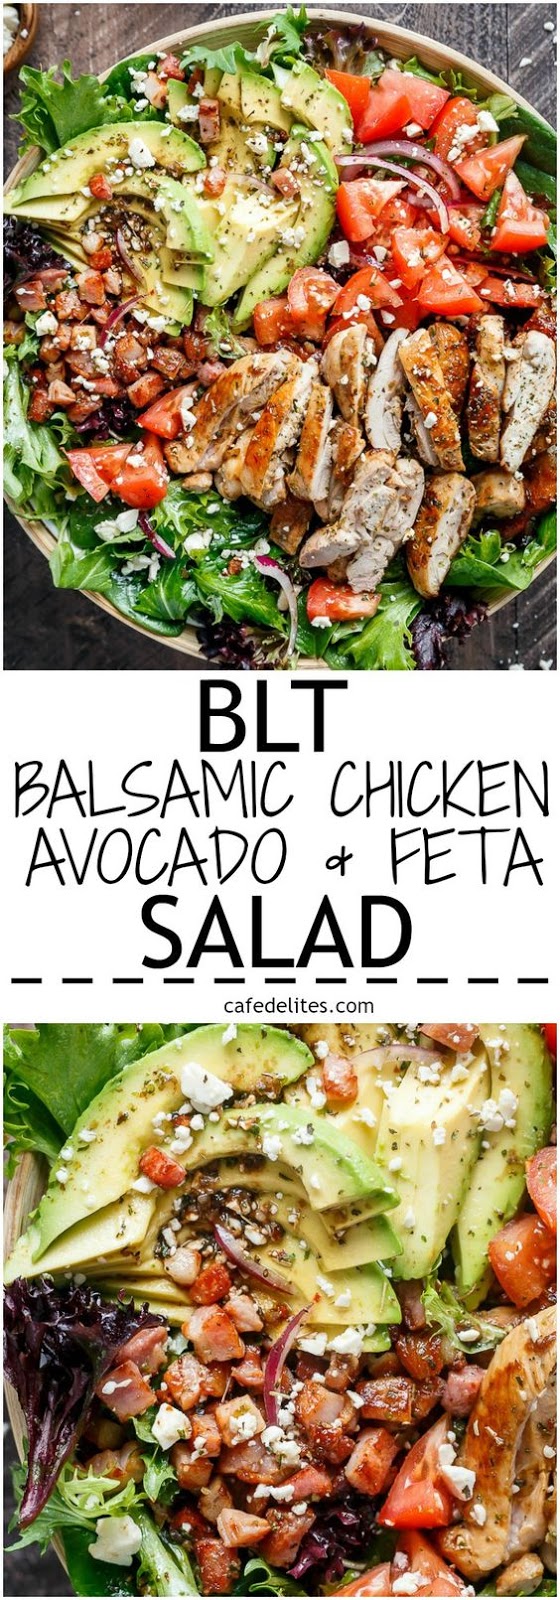 BLT Balsamic Chicken avocado Salad #chicken #chickenrecipes #balsamicchicken #avocado #salad #avocadosalad #healthyrecipes #easyrecipes